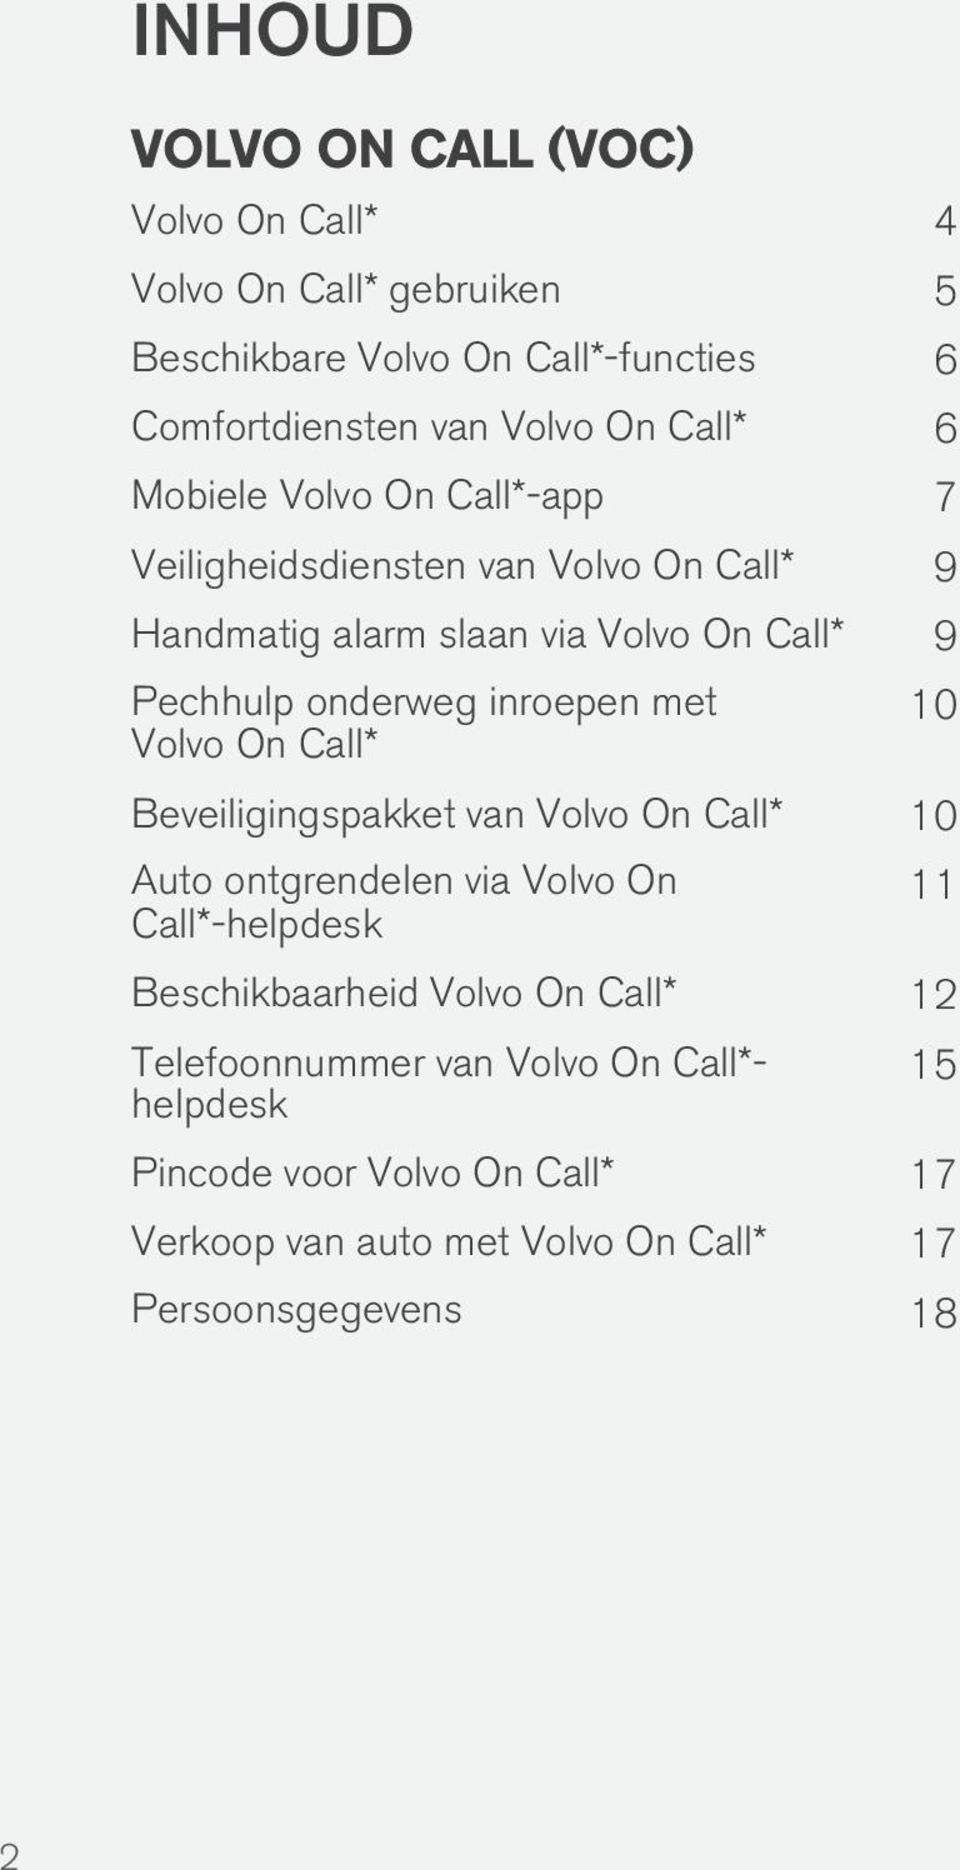 inroepen met Volvo On Call* 10 Beveiligingspakket van Volvo On Call* 10 Auto ontgrendelen via Volvo On Call*-helpdesk 11 Beschikbaarheid Volvo